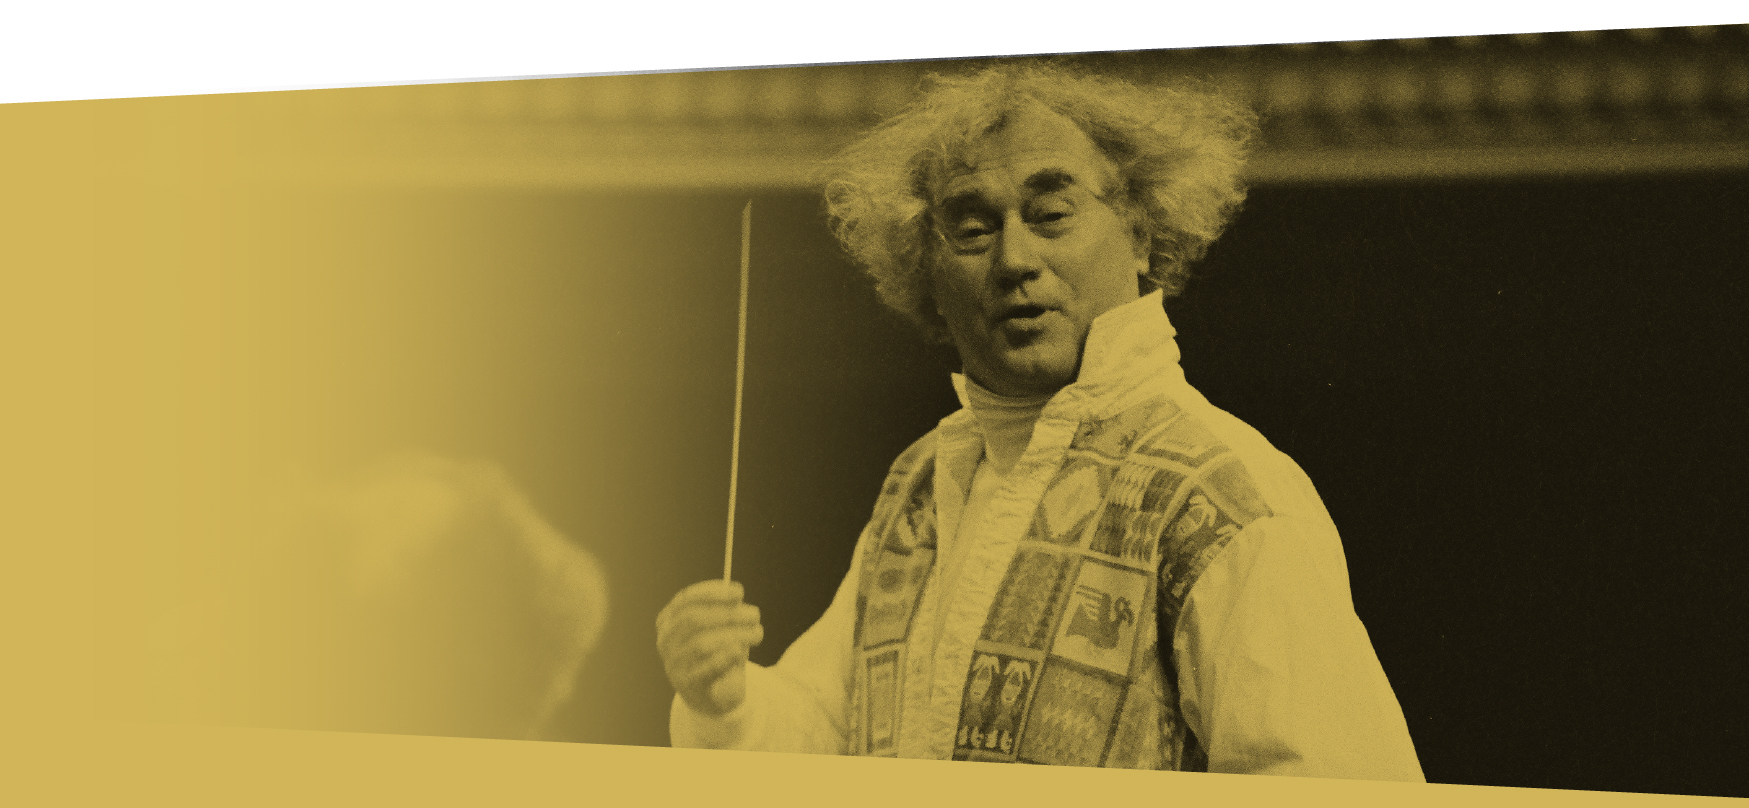 Zdjęcie: Starszy mężczyzna z falowanymi, siwymi włosami trzyma w dłoni batutę. Jest to Jerzy Maksymiuk - dyrygent, pianista, kompozytor.